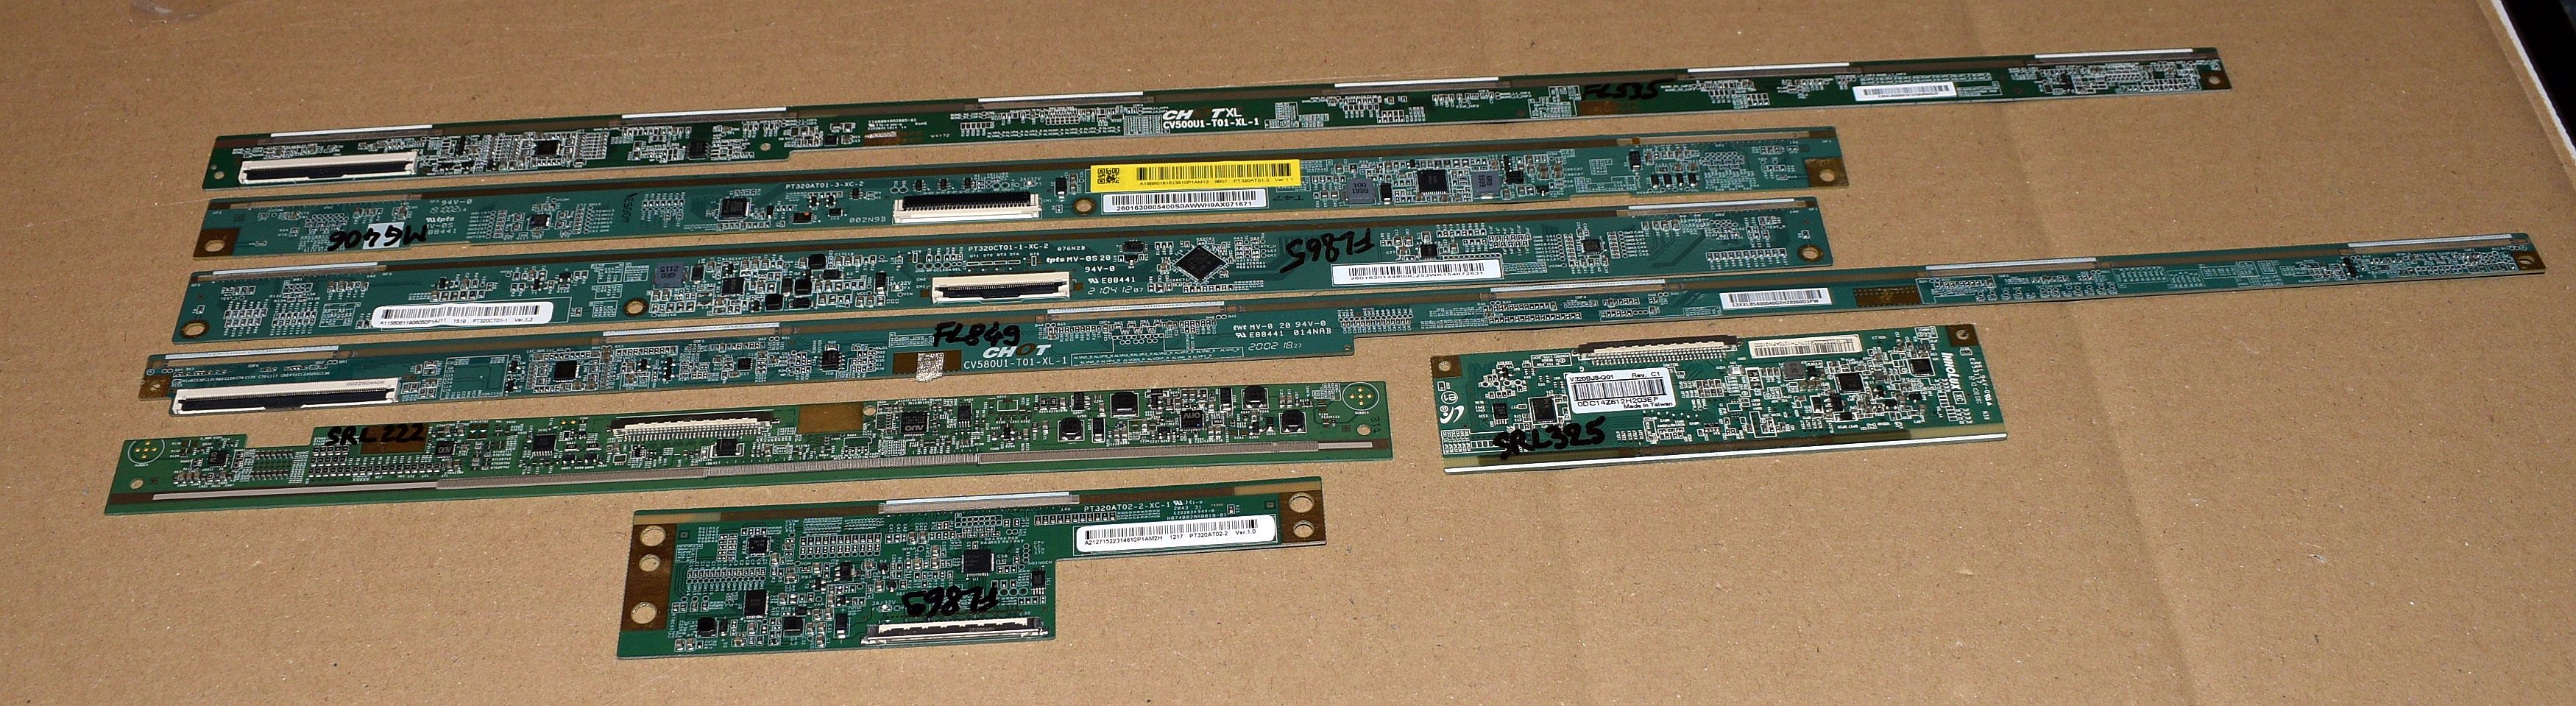 7 module TCON atasate de ecran - pentru piese - pozitia PCB32